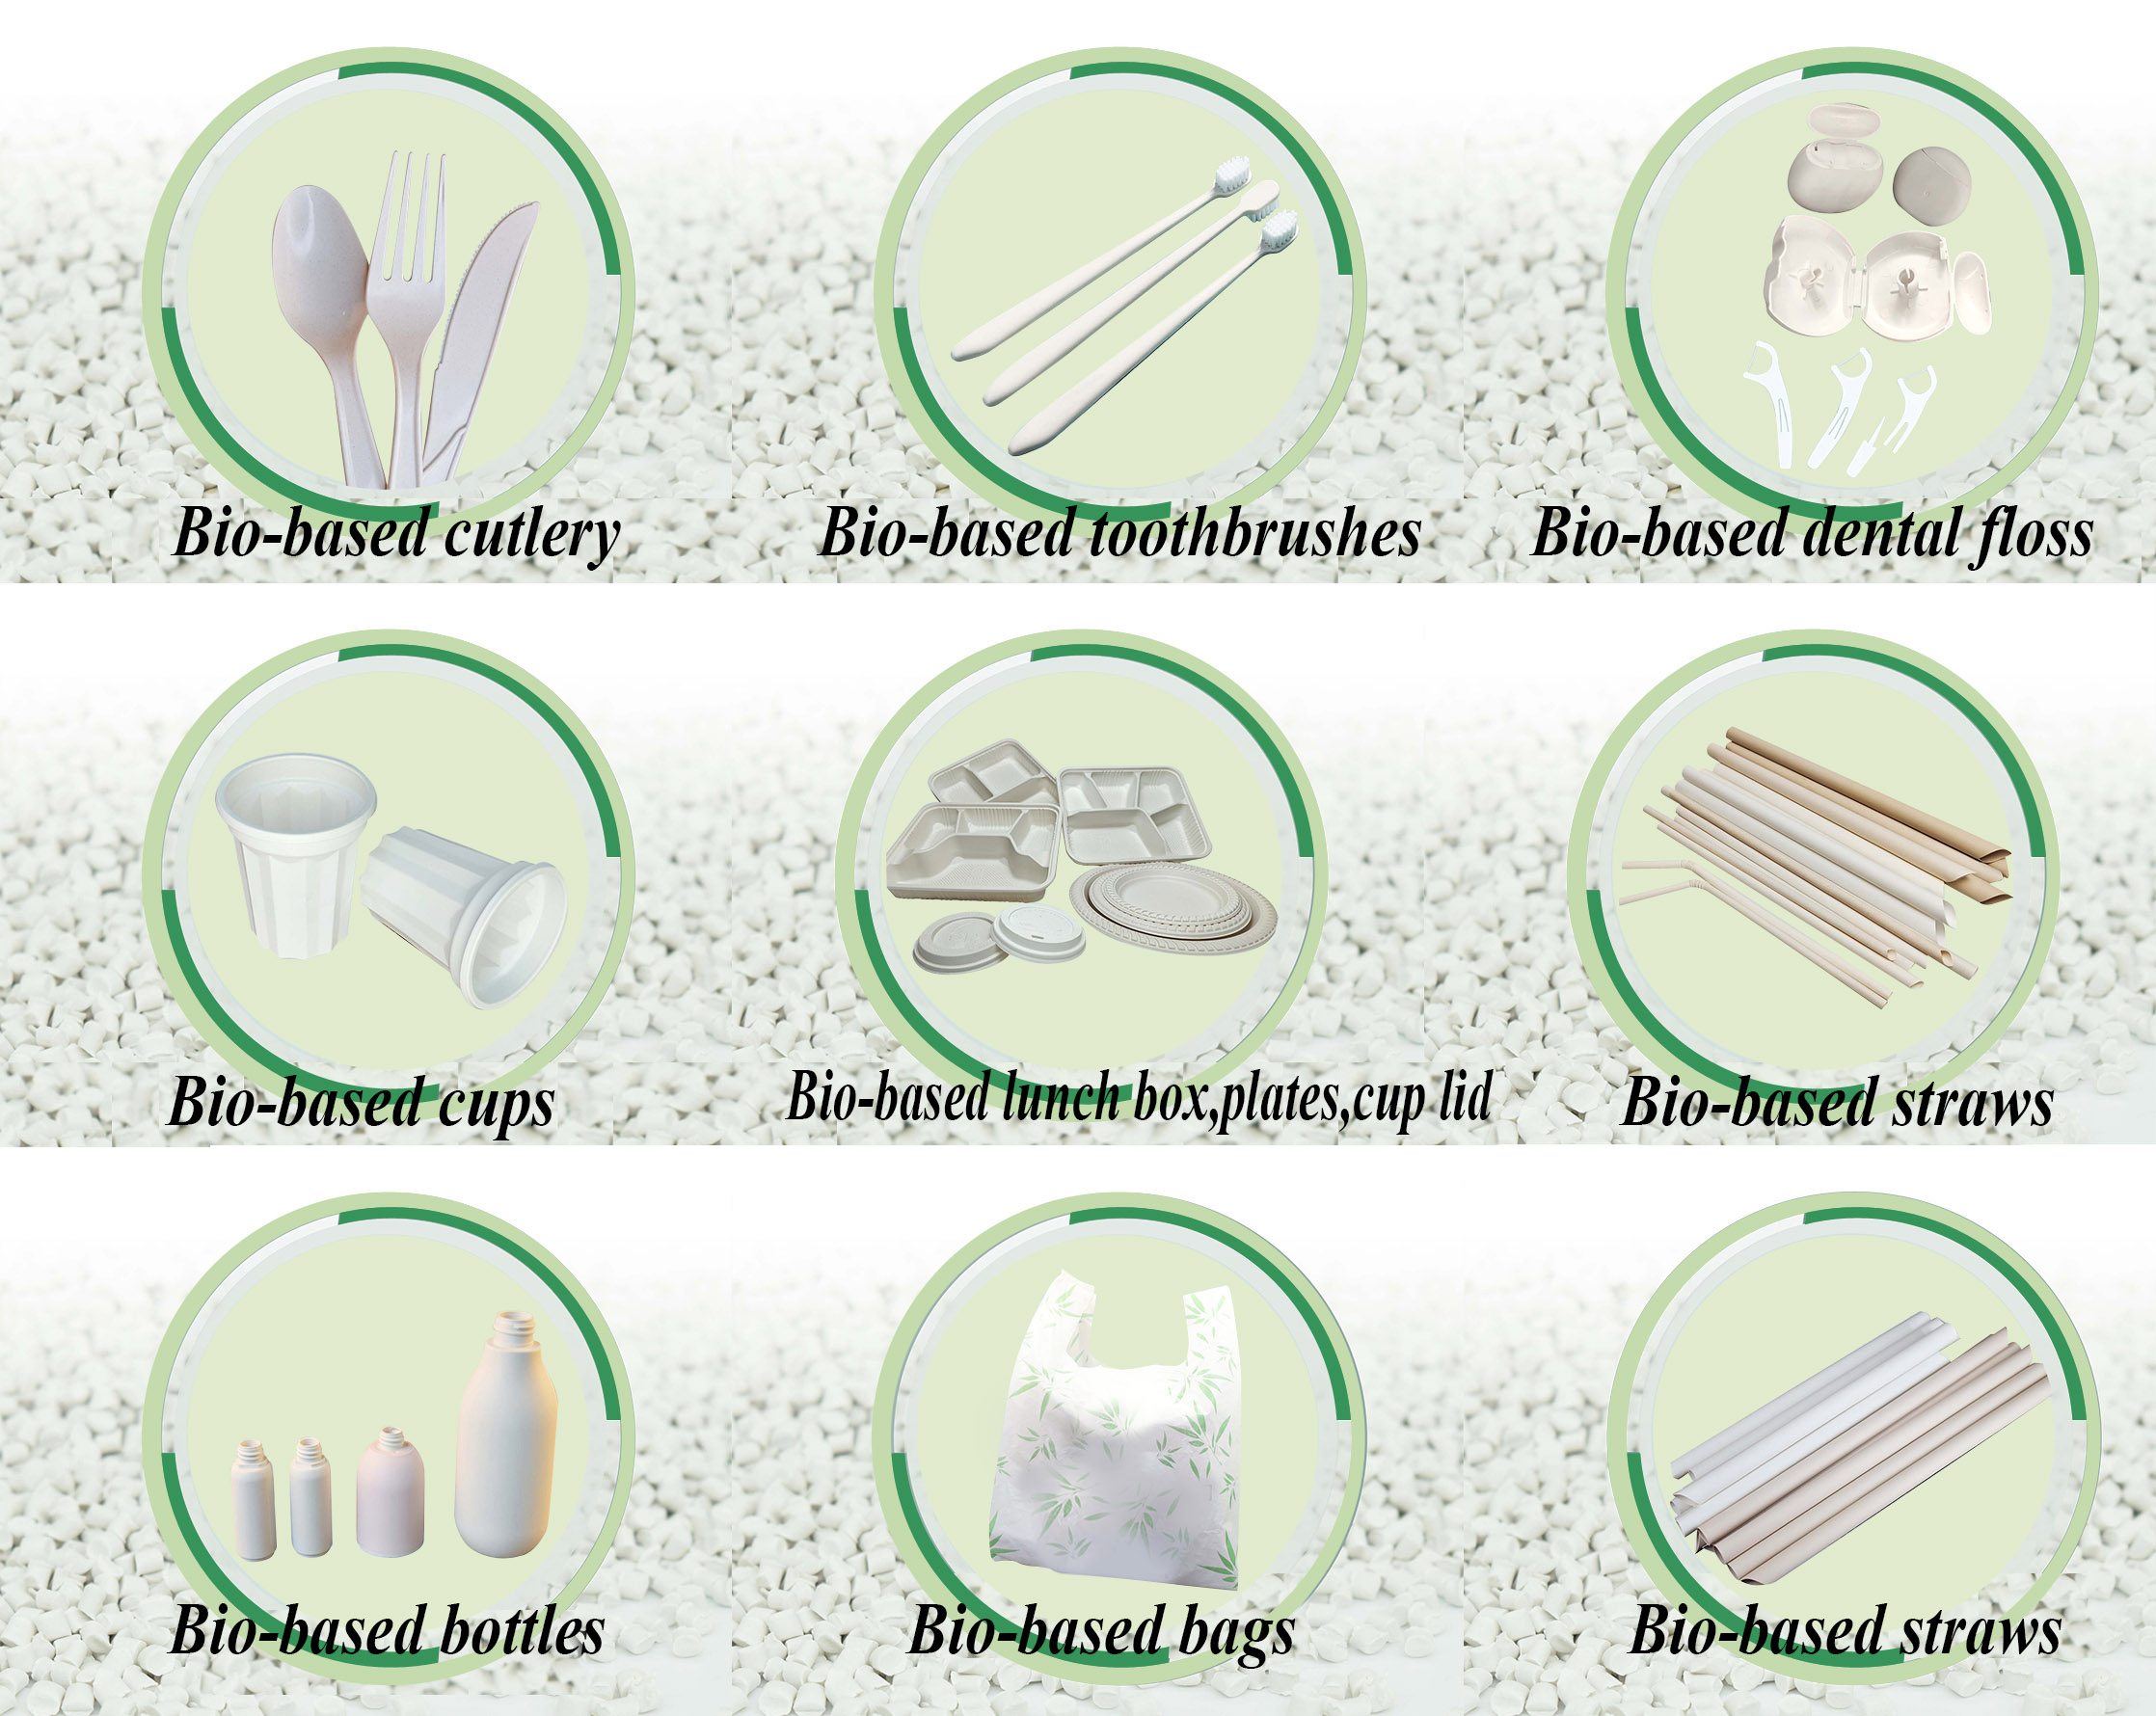 Venta al por mayor de productos biodegradables ecológicos.